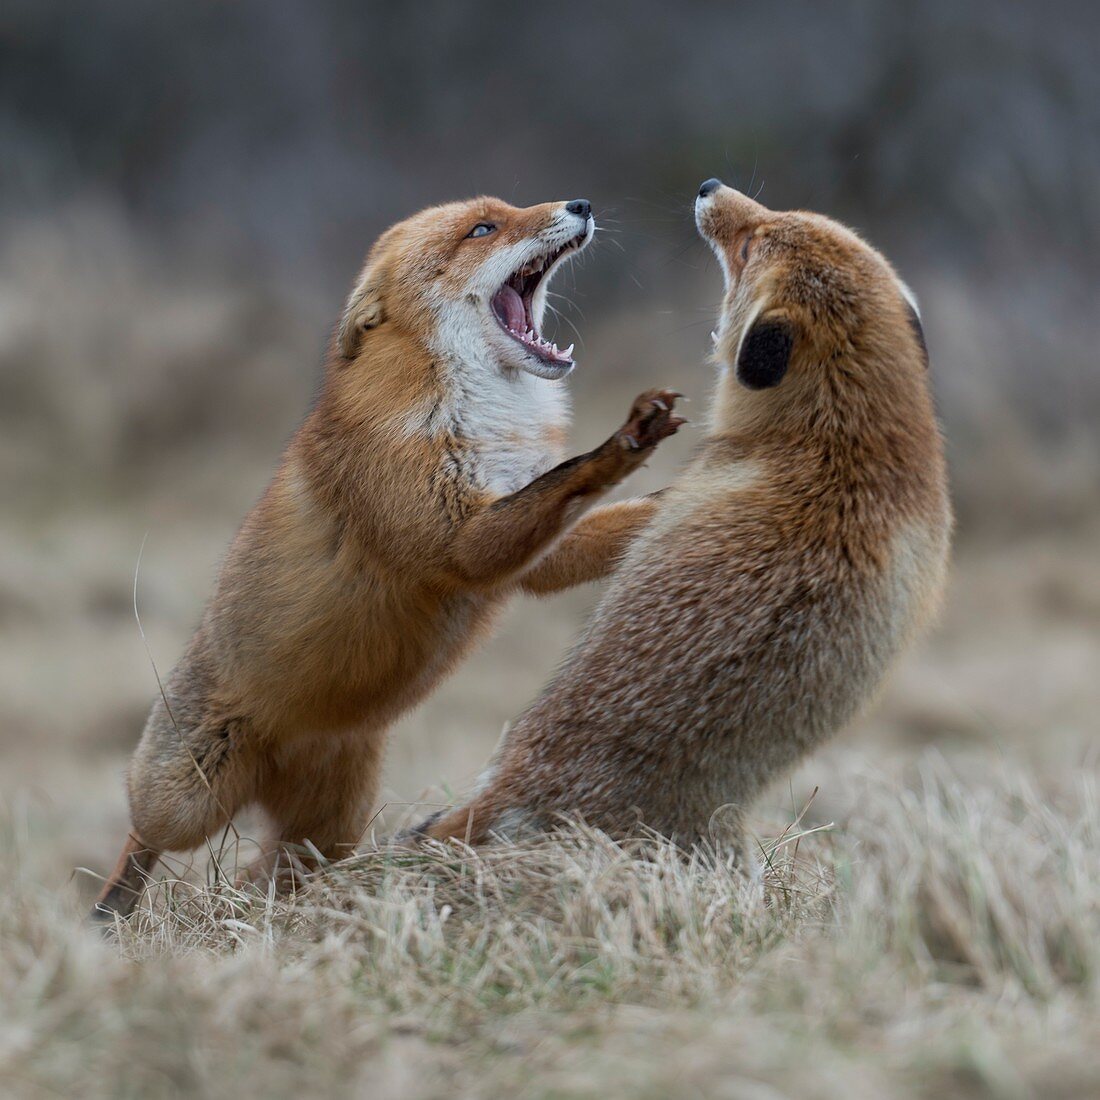 Rotfuchs (Vulpes vulpes), zwei Erwachsene, die auf Hinterbeinen stehen und sich gegenseitig mit weit geöffneten Kiefern bedrohen, territoriales Verhalten während der Brunft, Wildtiere, Europa